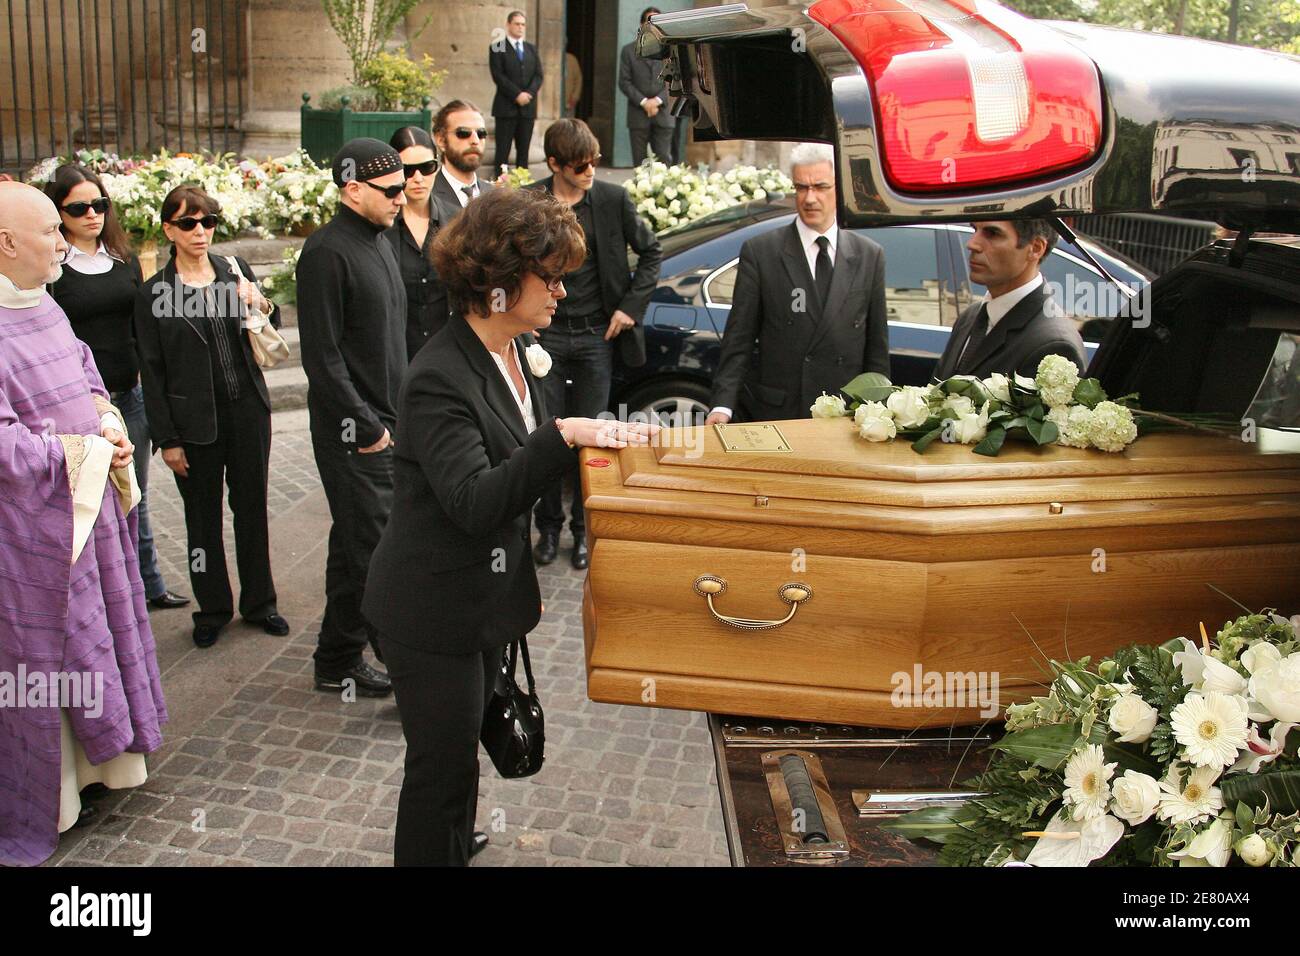 Anne Cassel pendant les funérailles de l'acteur français Jean-Pierre Cassel  à l'église Saint-Eustache à Paris, France, le 26 avril 2007. Cassel est mort  d'un cancer à 74 heures jeudi dernier. Photo de